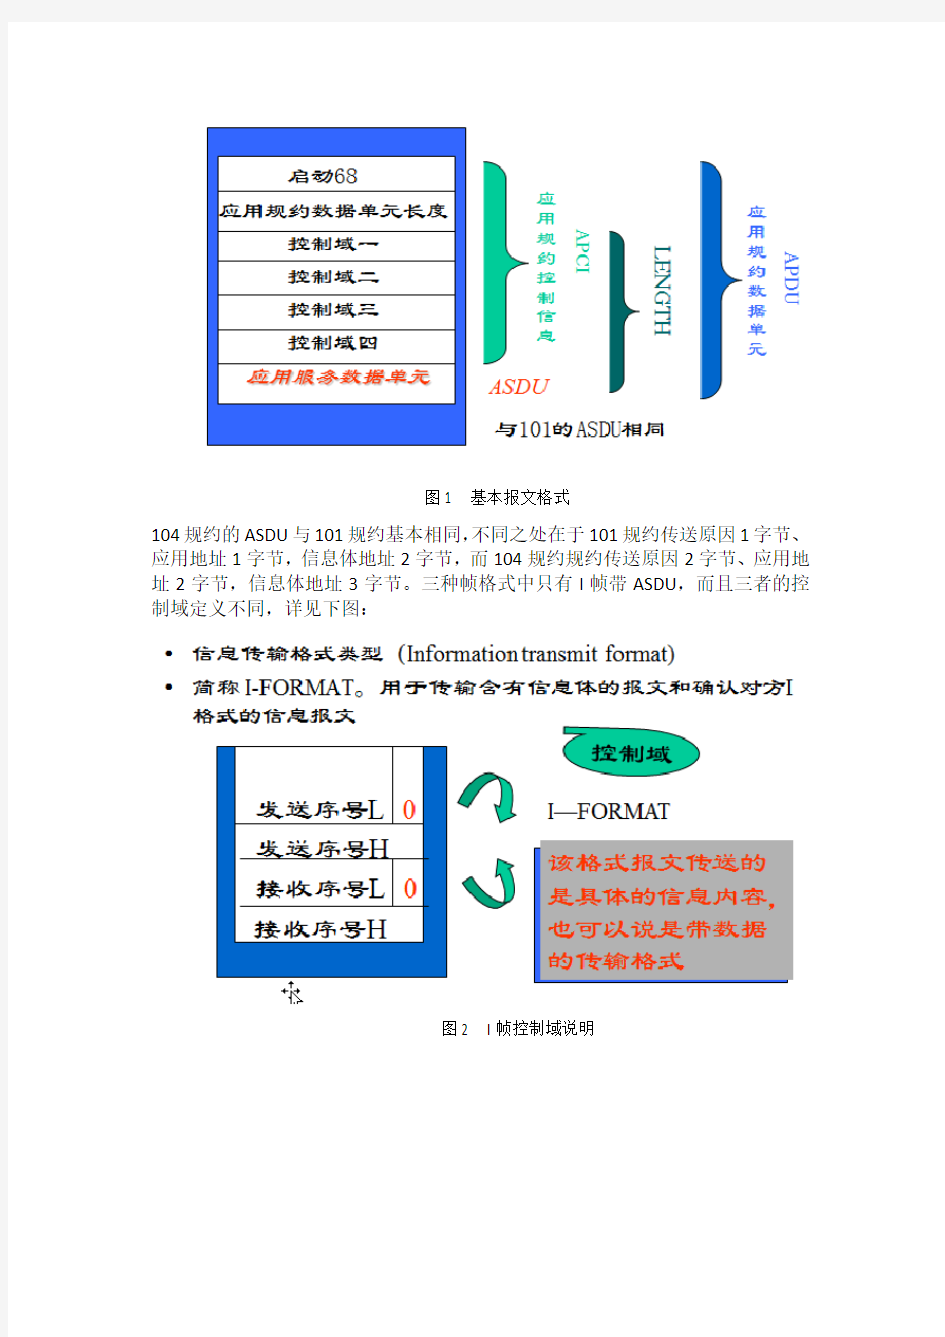 北京四方2014年度工程技术培训104规约解析及应用常见问题